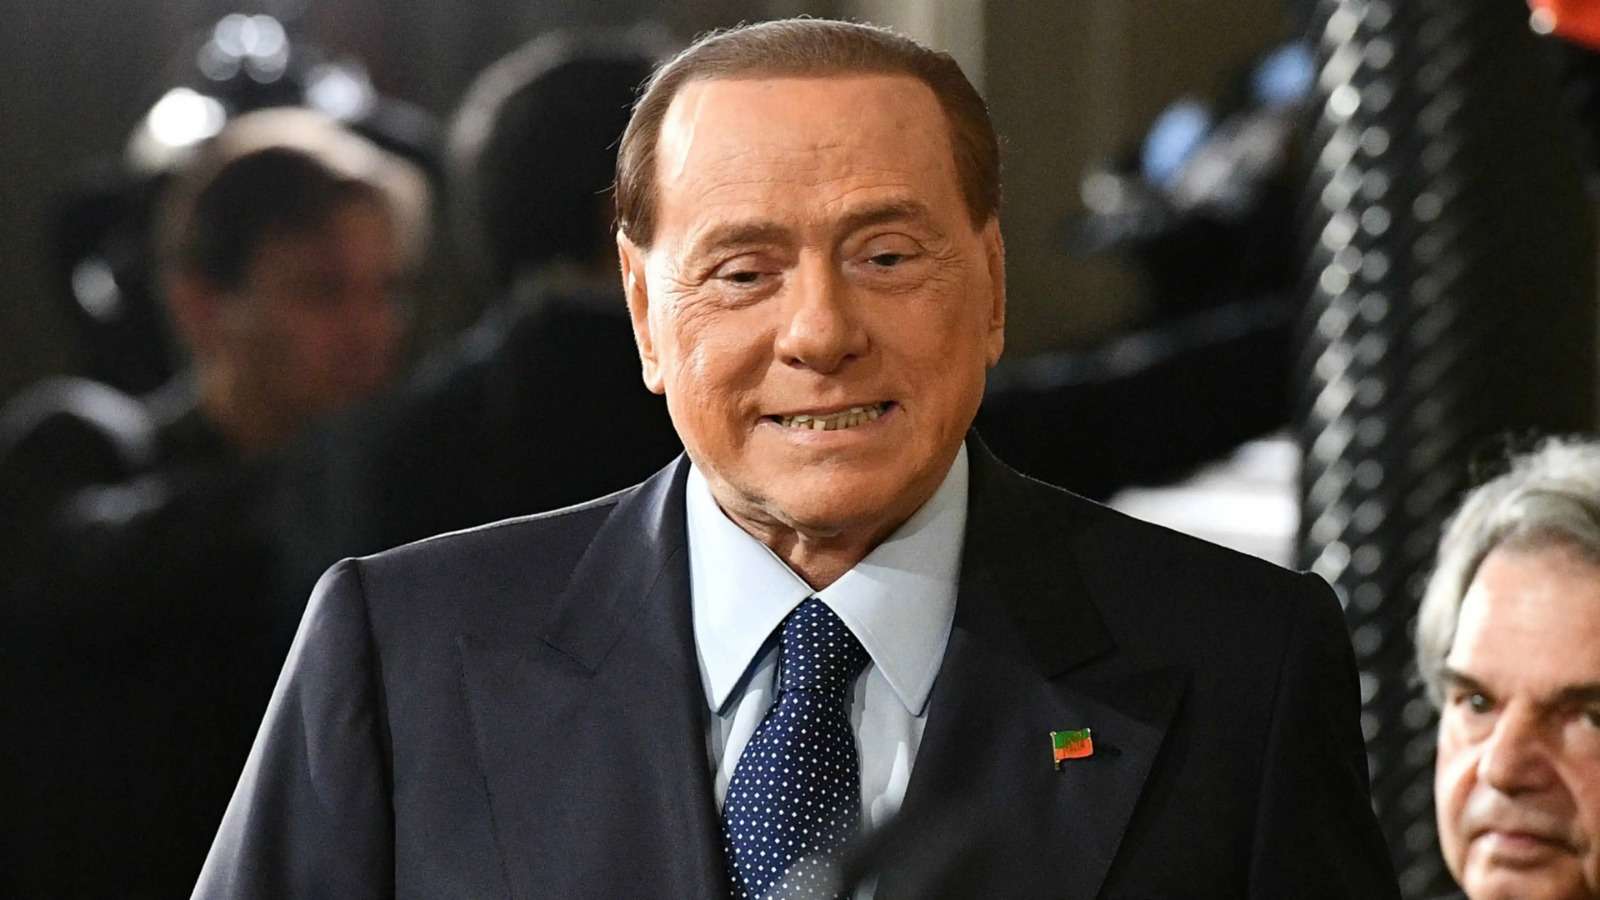 Silvio-Berlusconi-Former-Prime-Minister-of-Italy